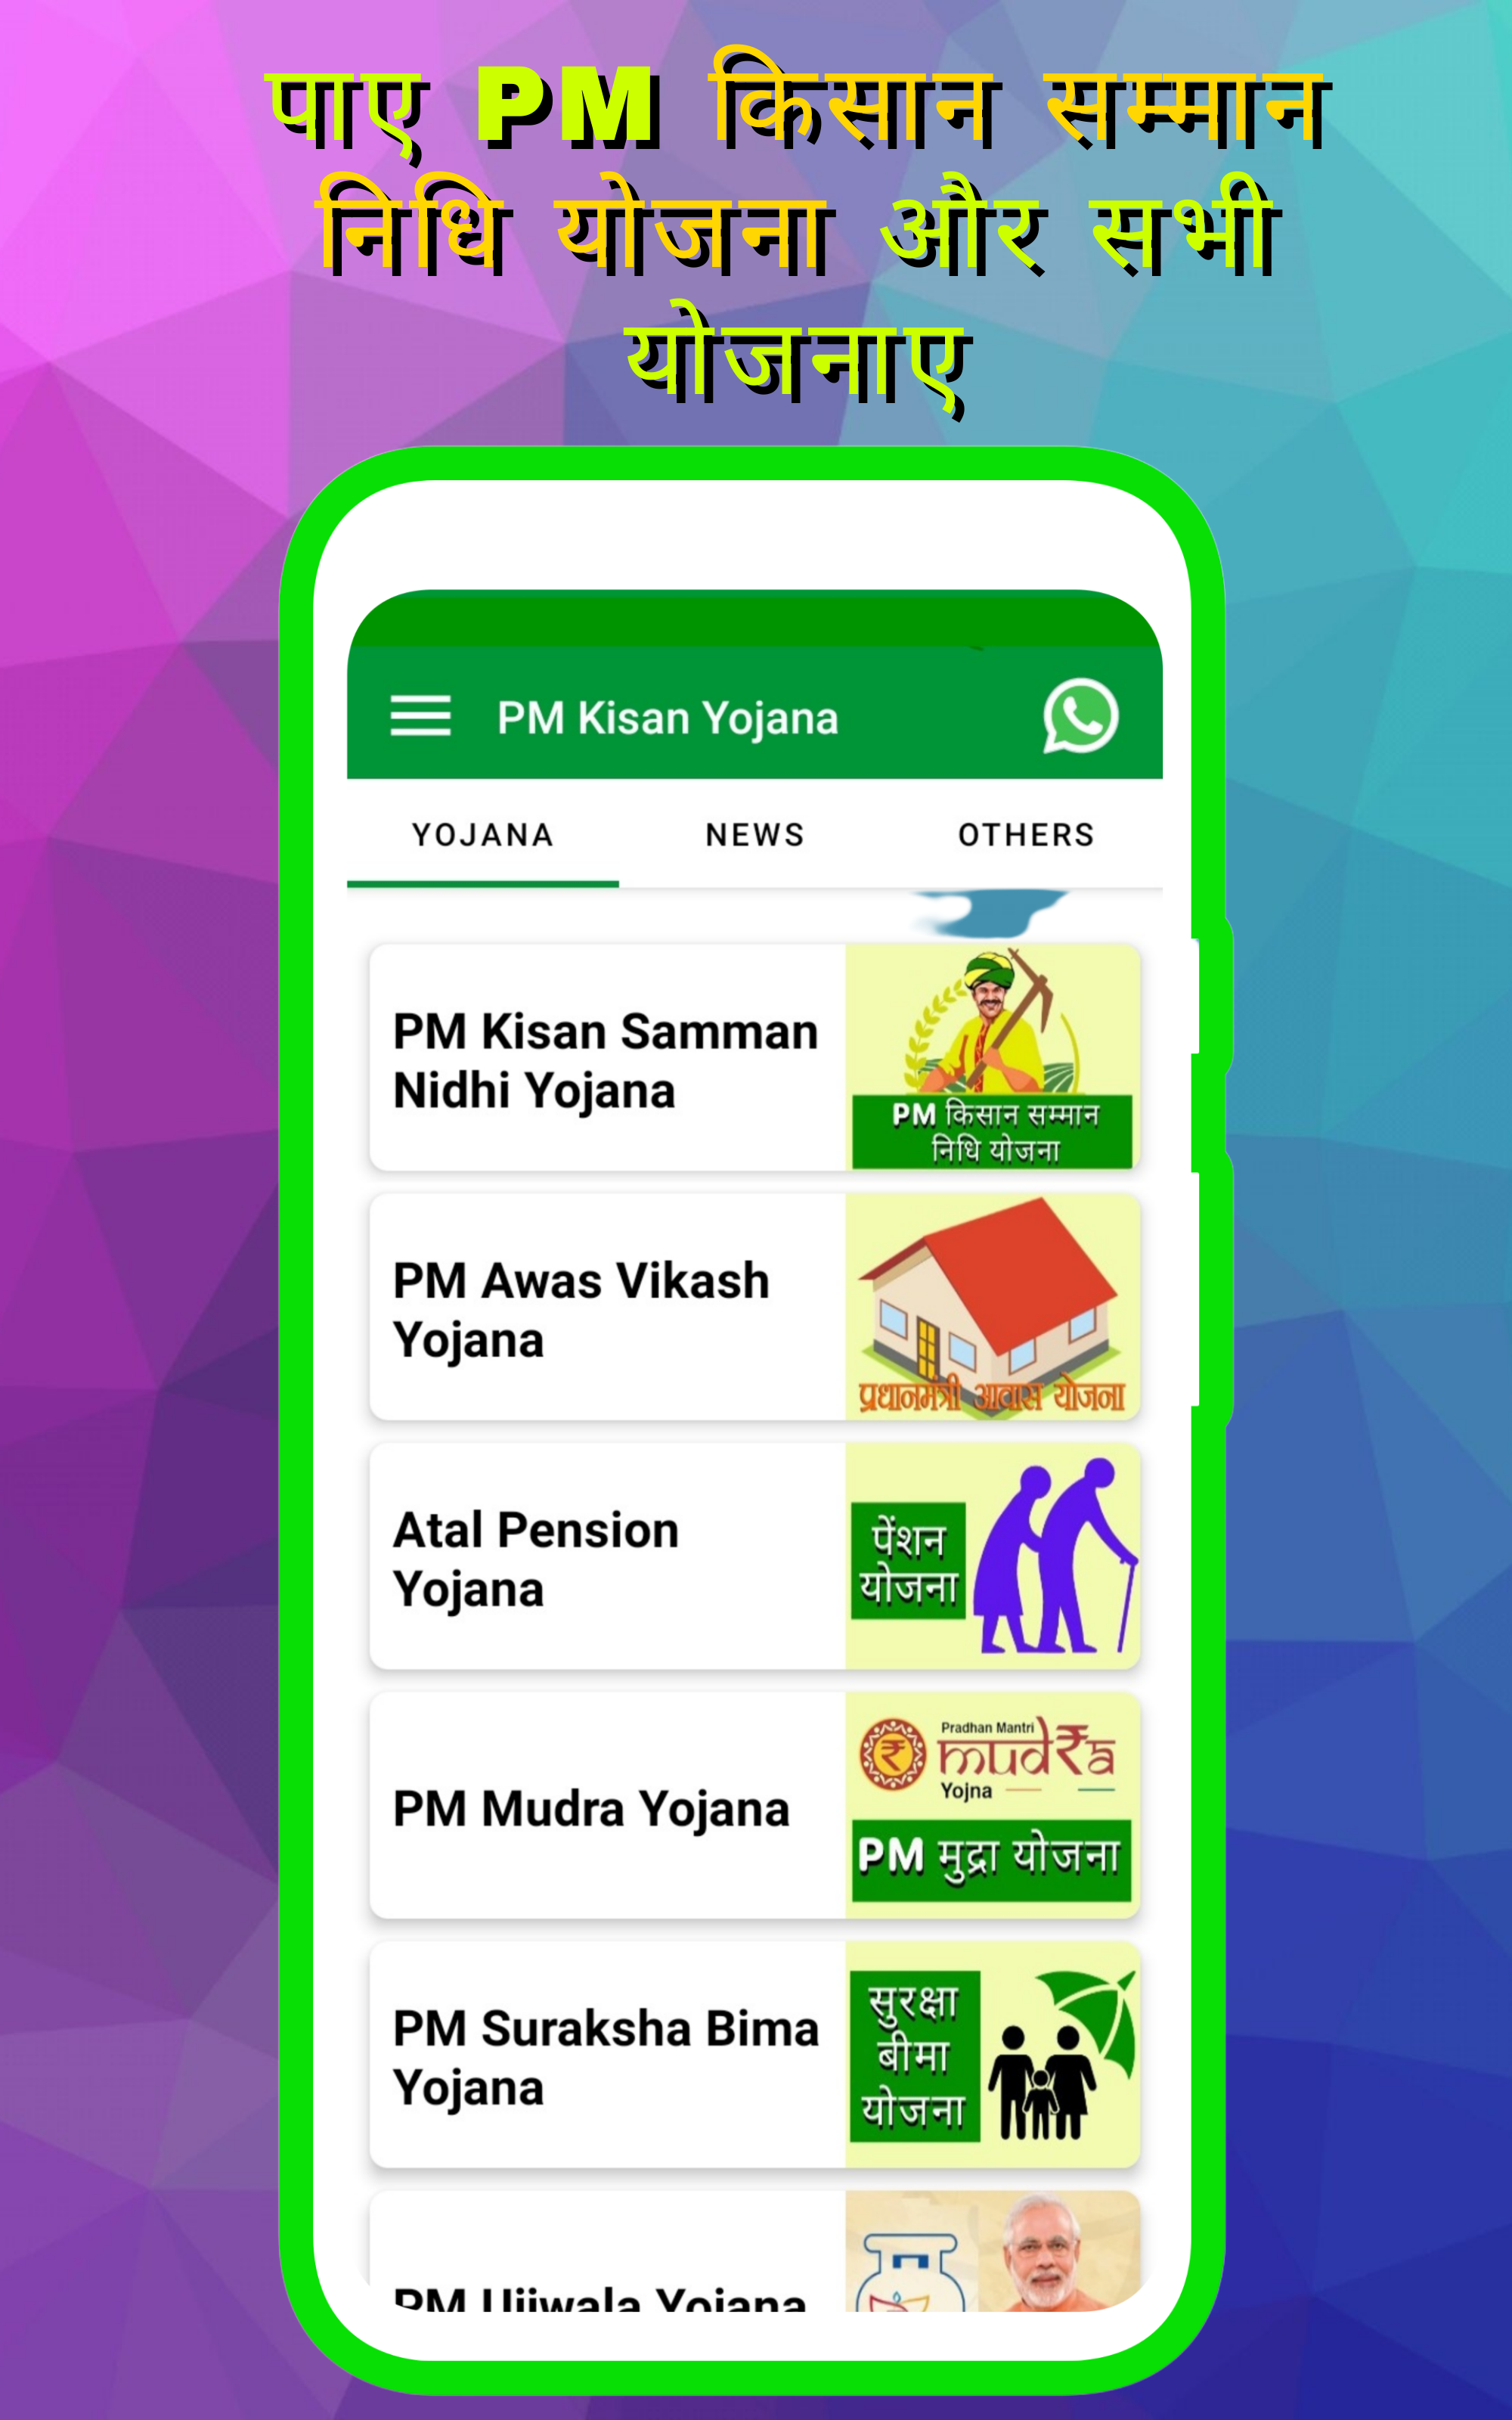 PM Kisan Yojana: Status & List